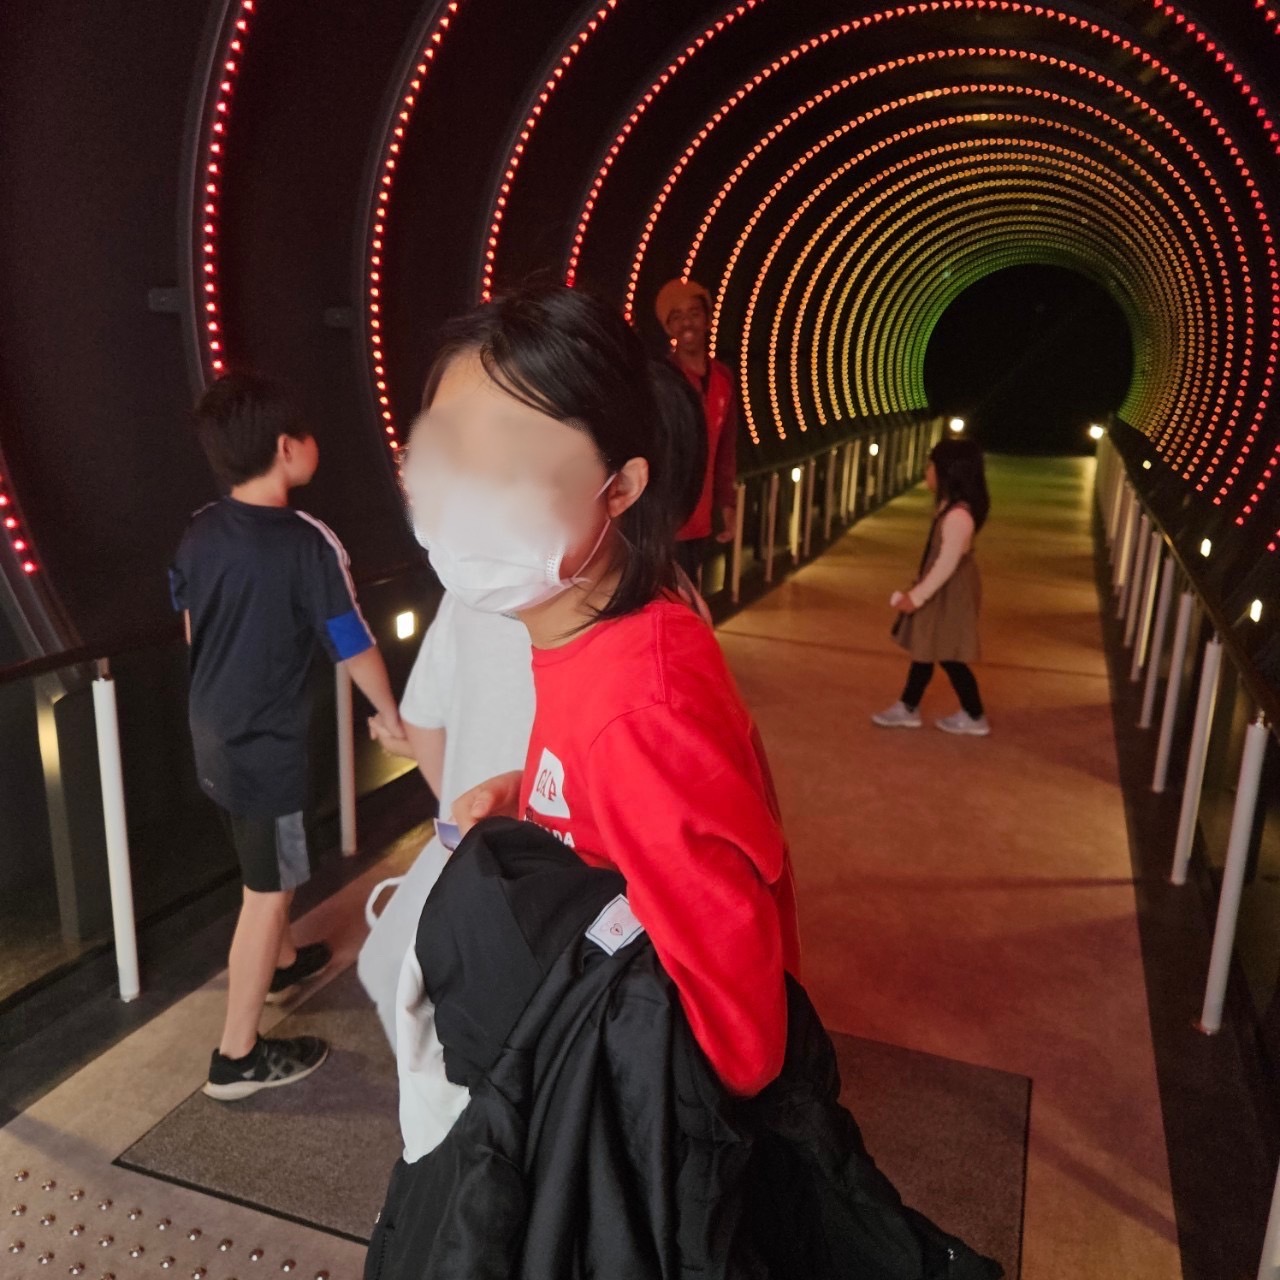 大阪市浪速区の放課後等デイサービスオハナピース大阪日本橋の万博記念公園、EXPO'70パビリオンへおでかけ